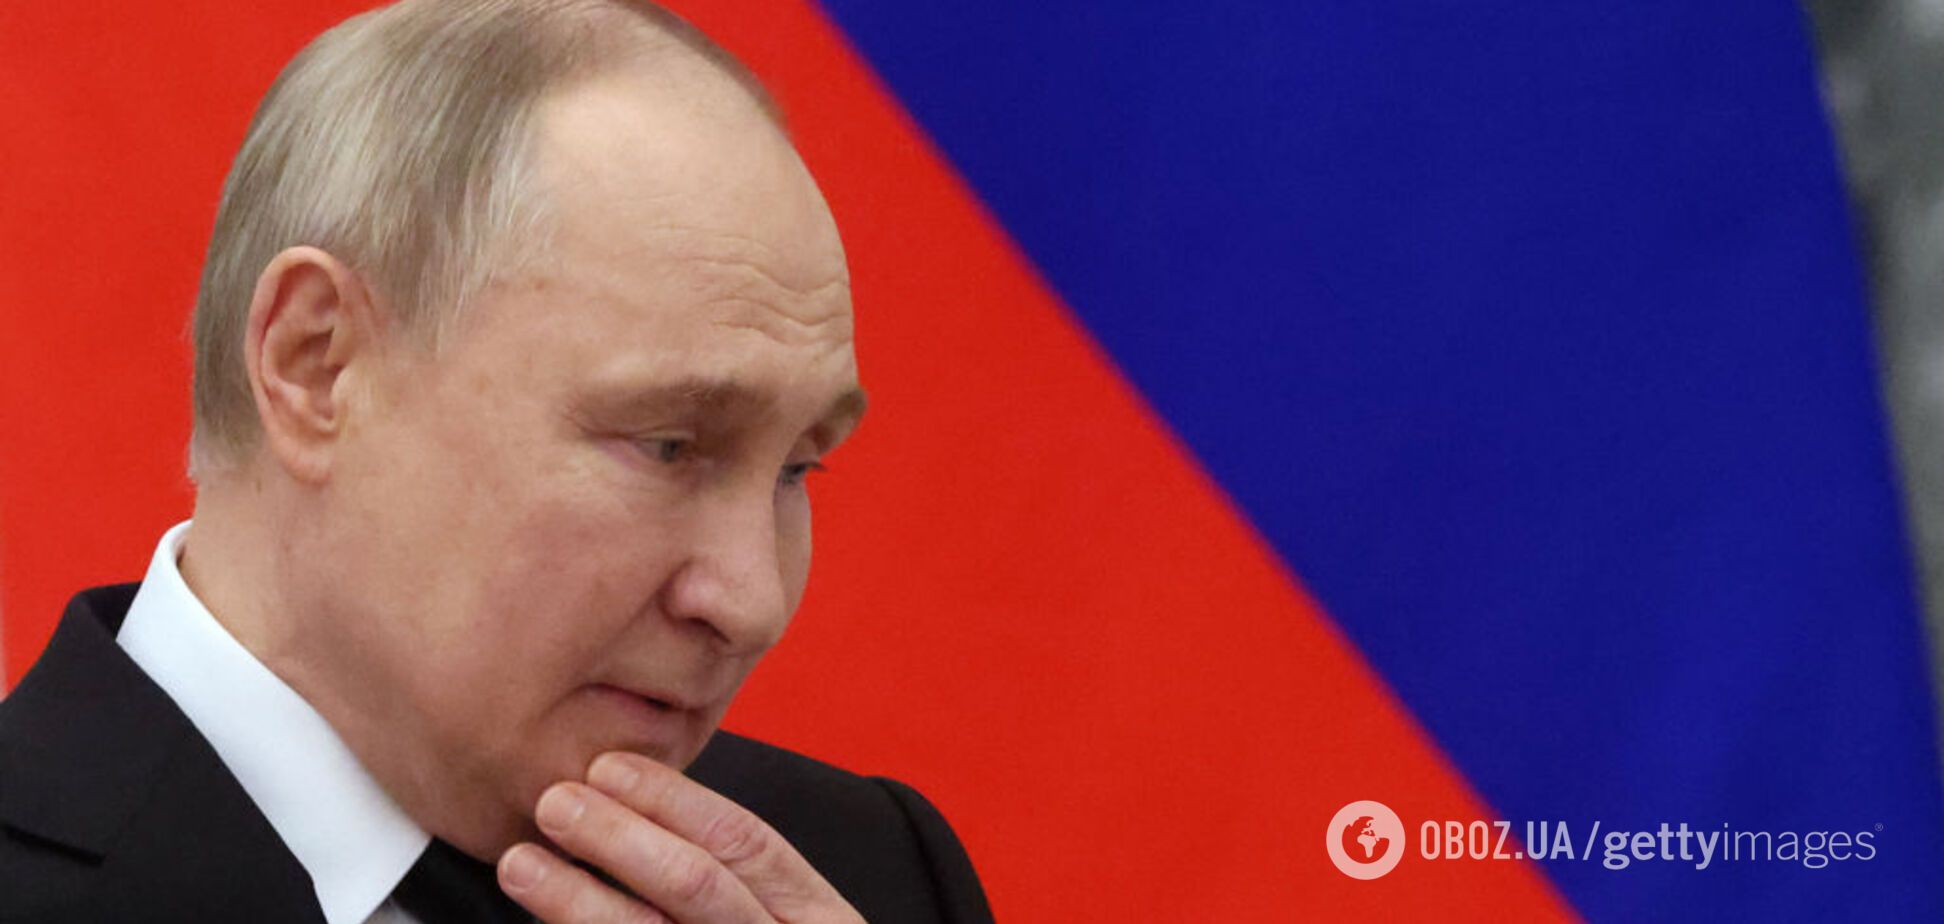 Росіяни повірили у брехню Путіна про причетність України до теракту у 'Крокусі' – опитування OpenMinds